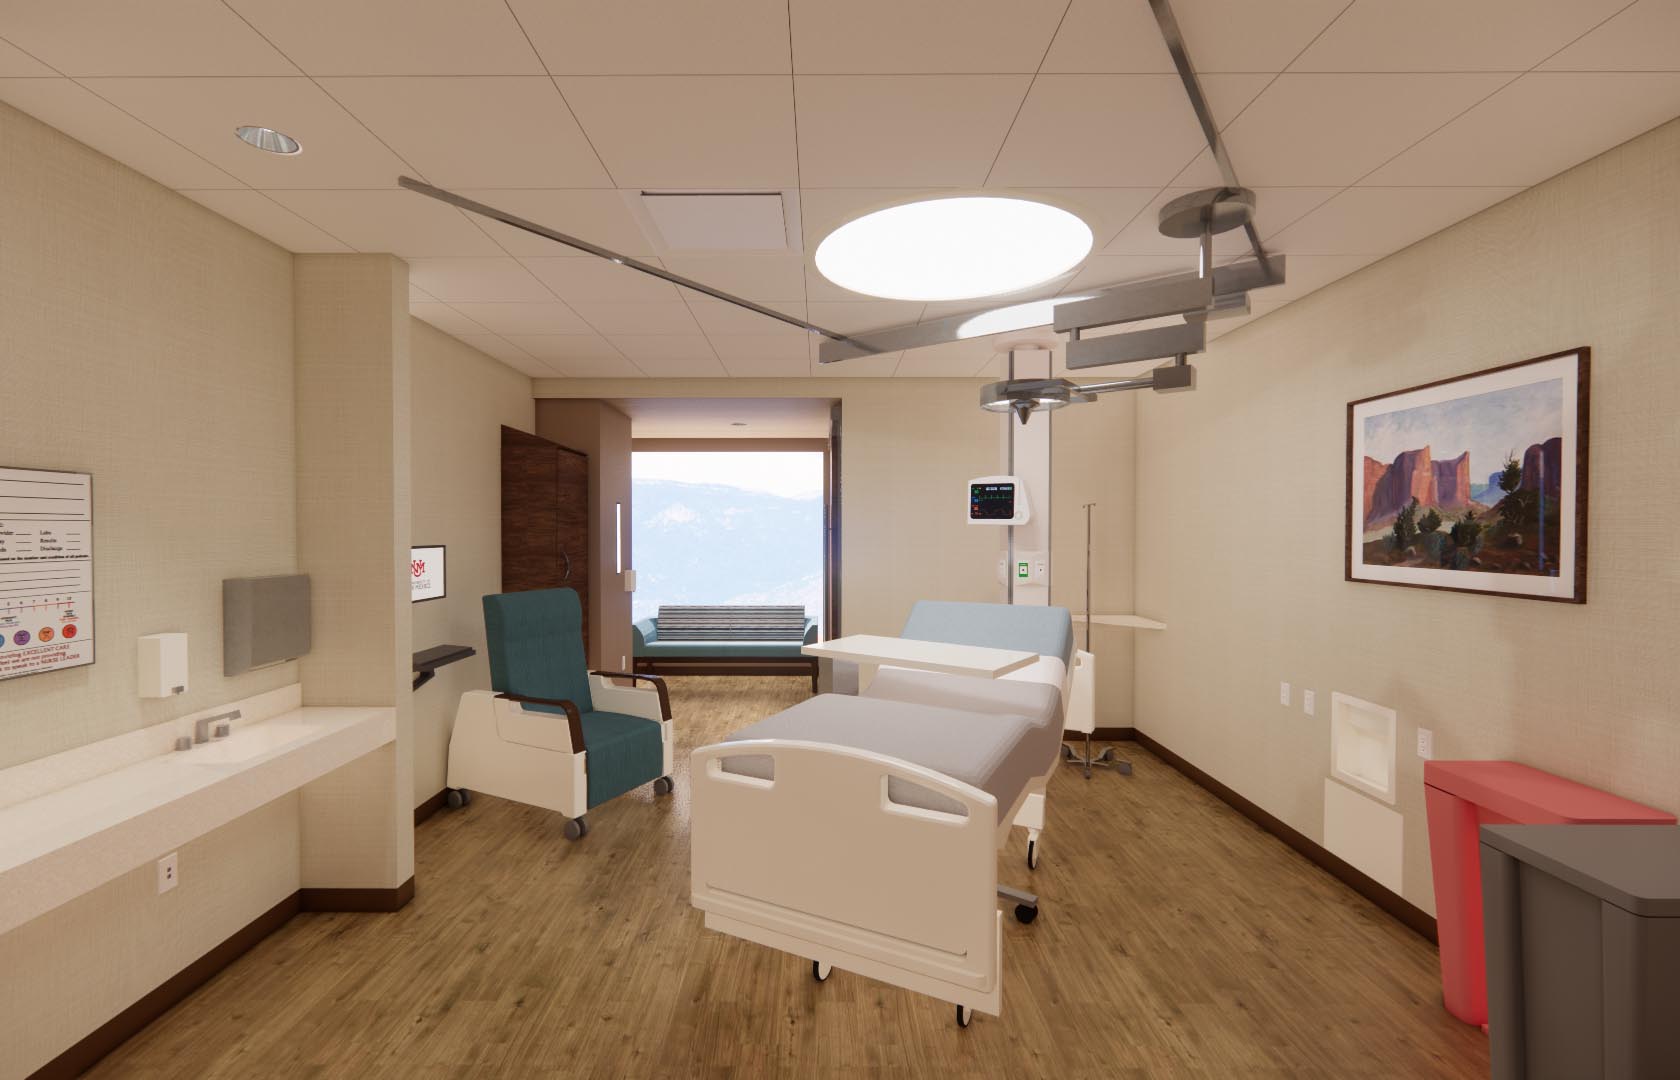 新しいタワー拡張の病室のコンセプトアート